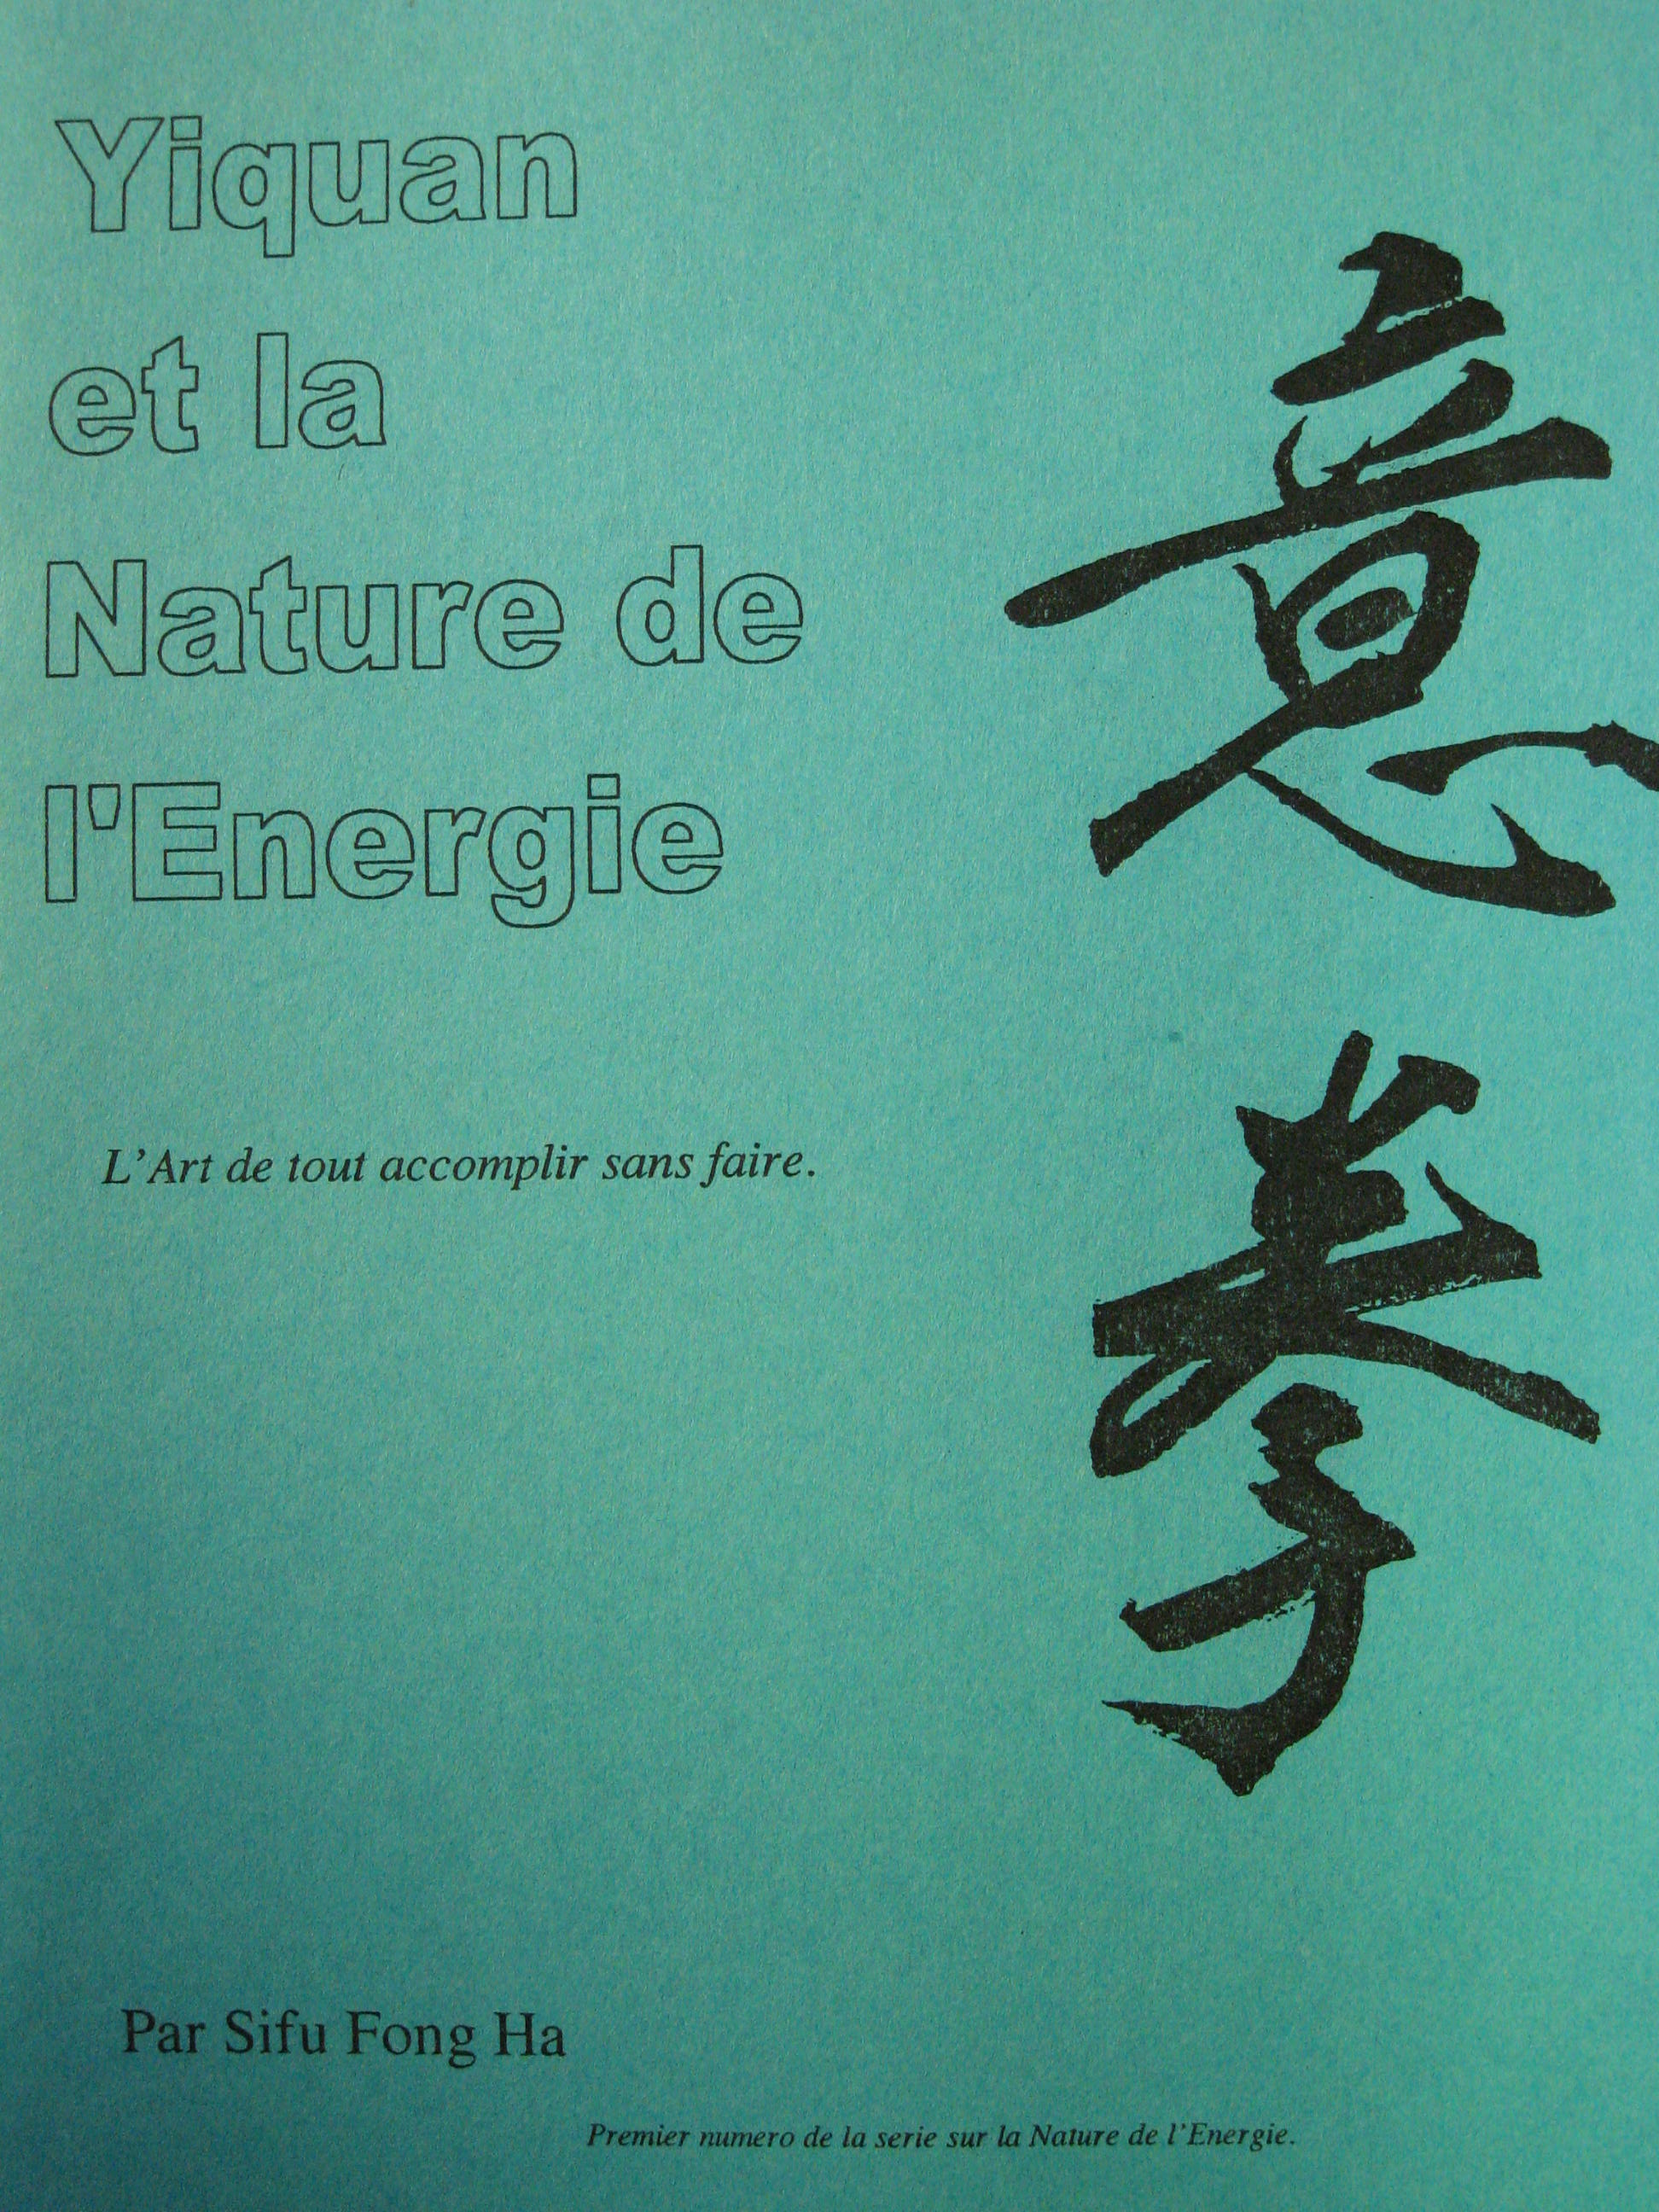 Yiquan et la Nature de l'Energie: L'Art de tout accomplir sans faire  (Complete translation in French)